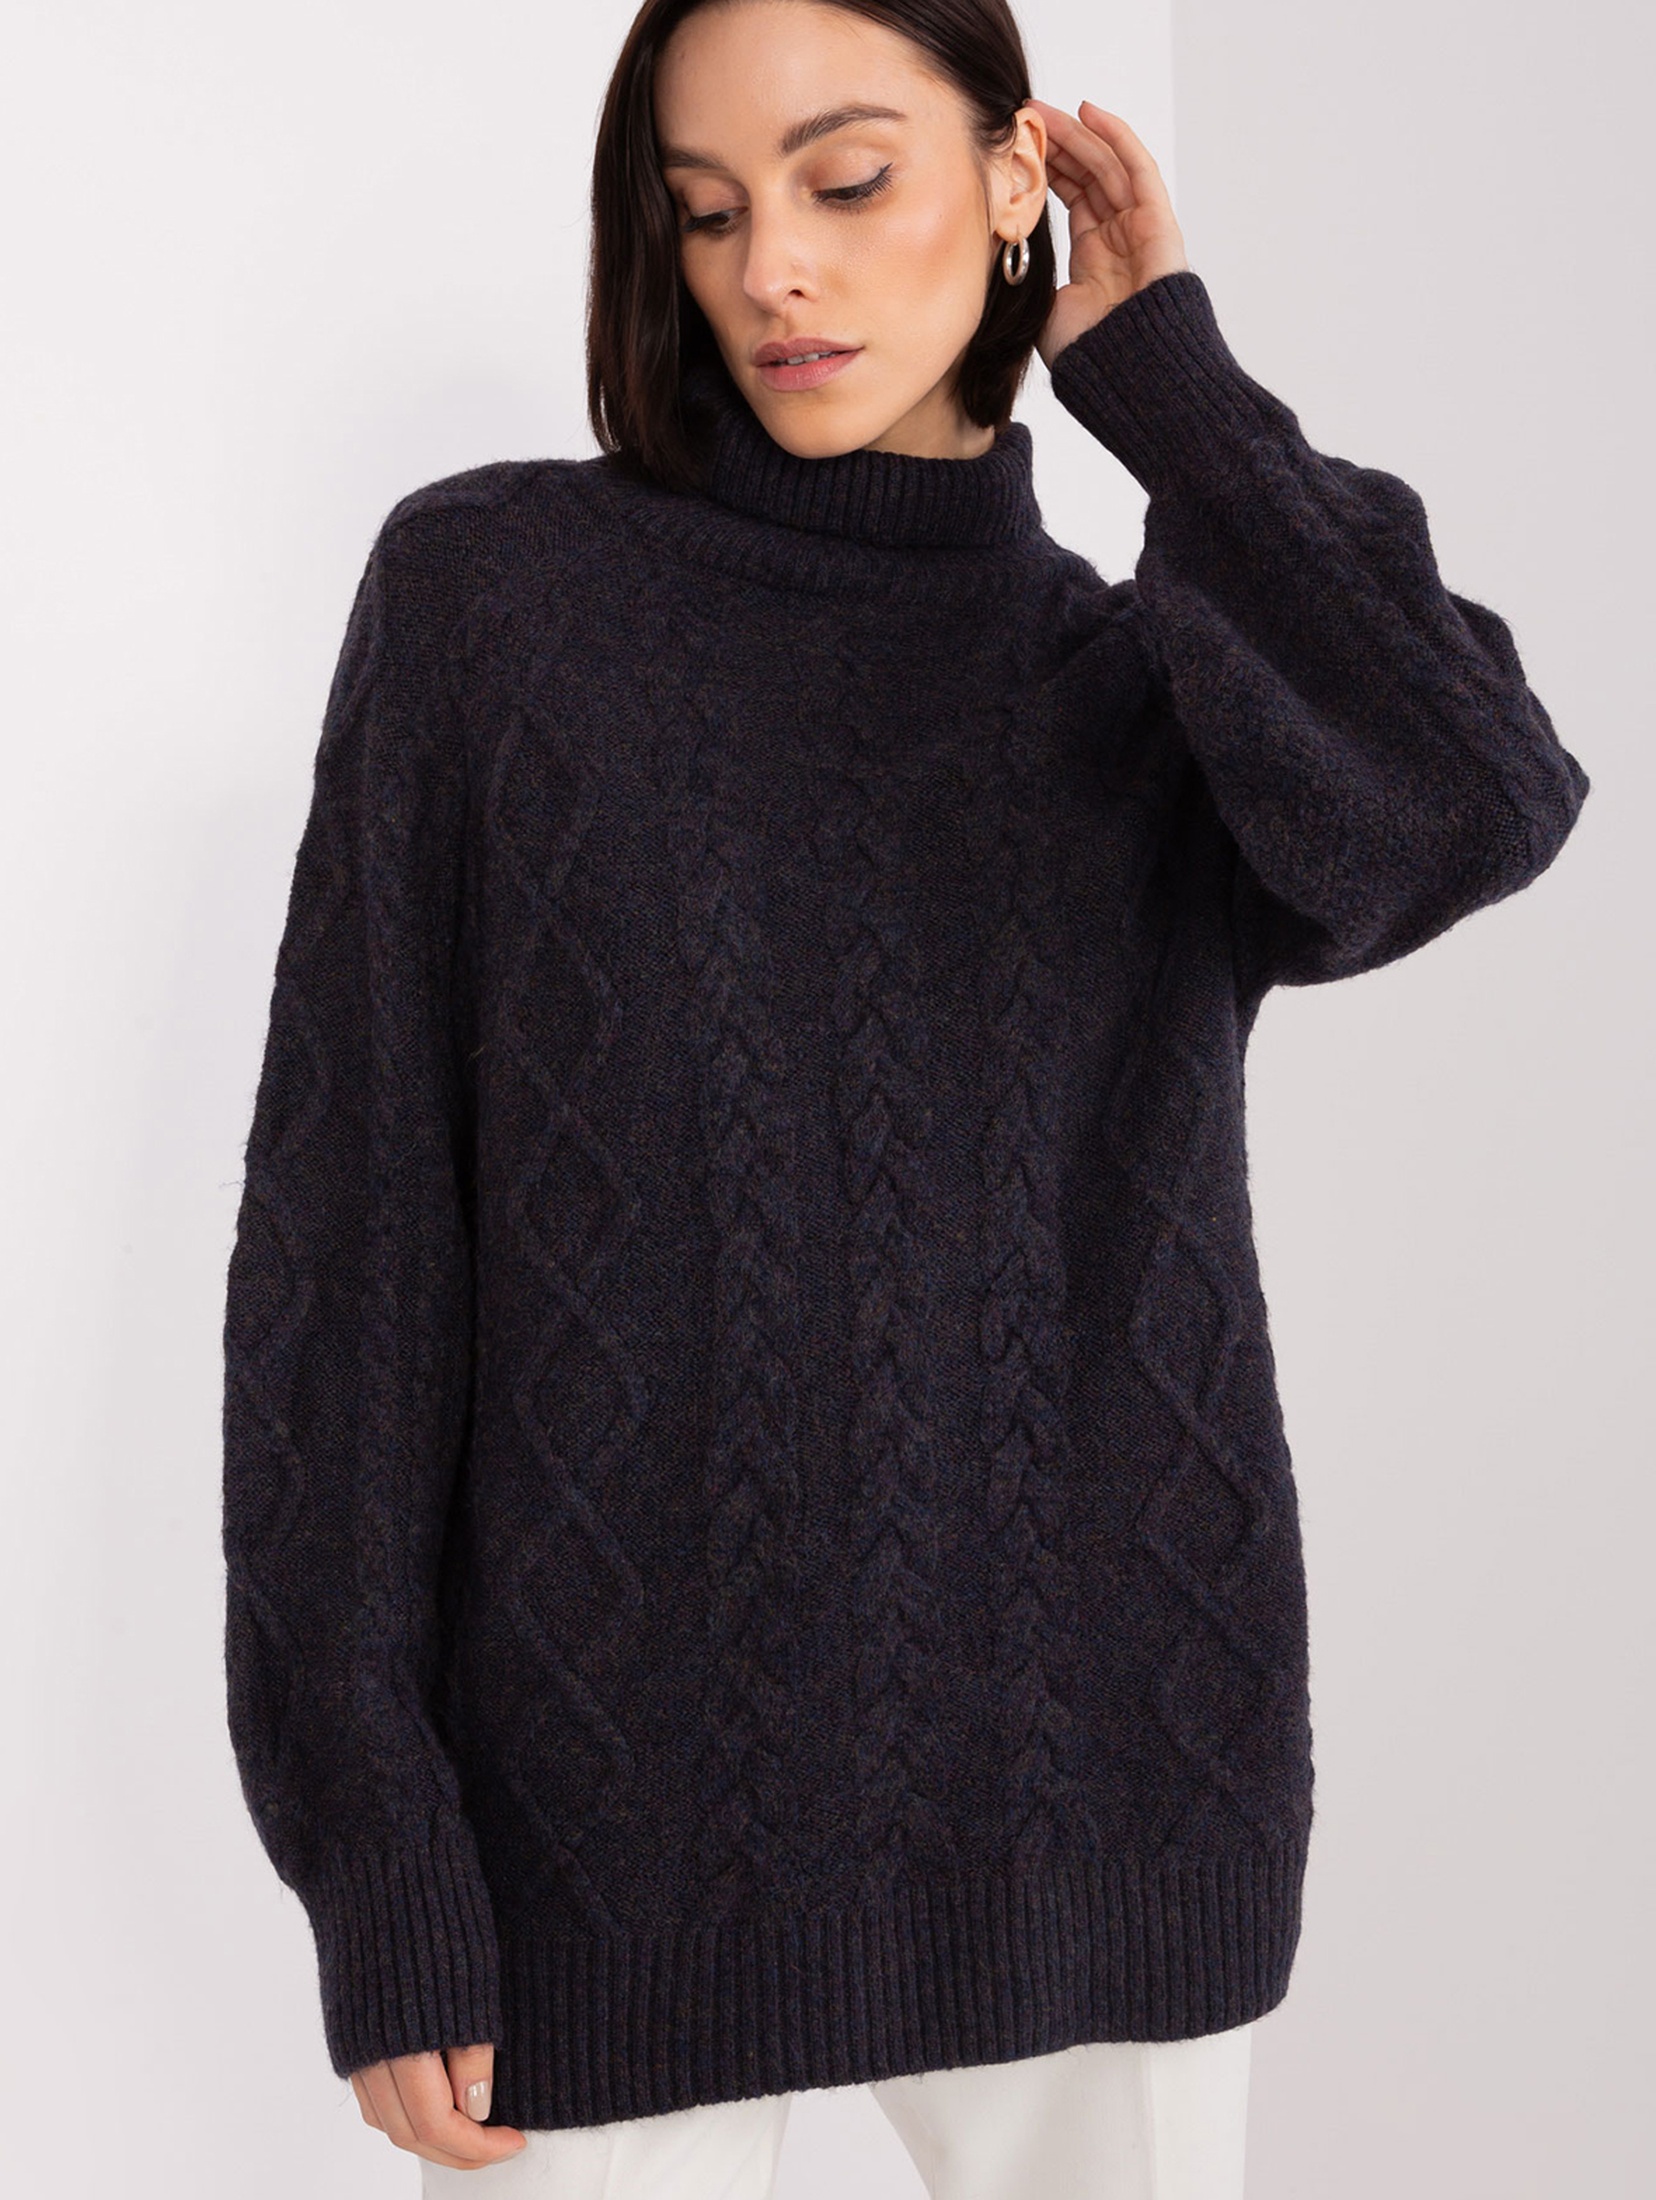 Damski sweter z warkoczami czarny